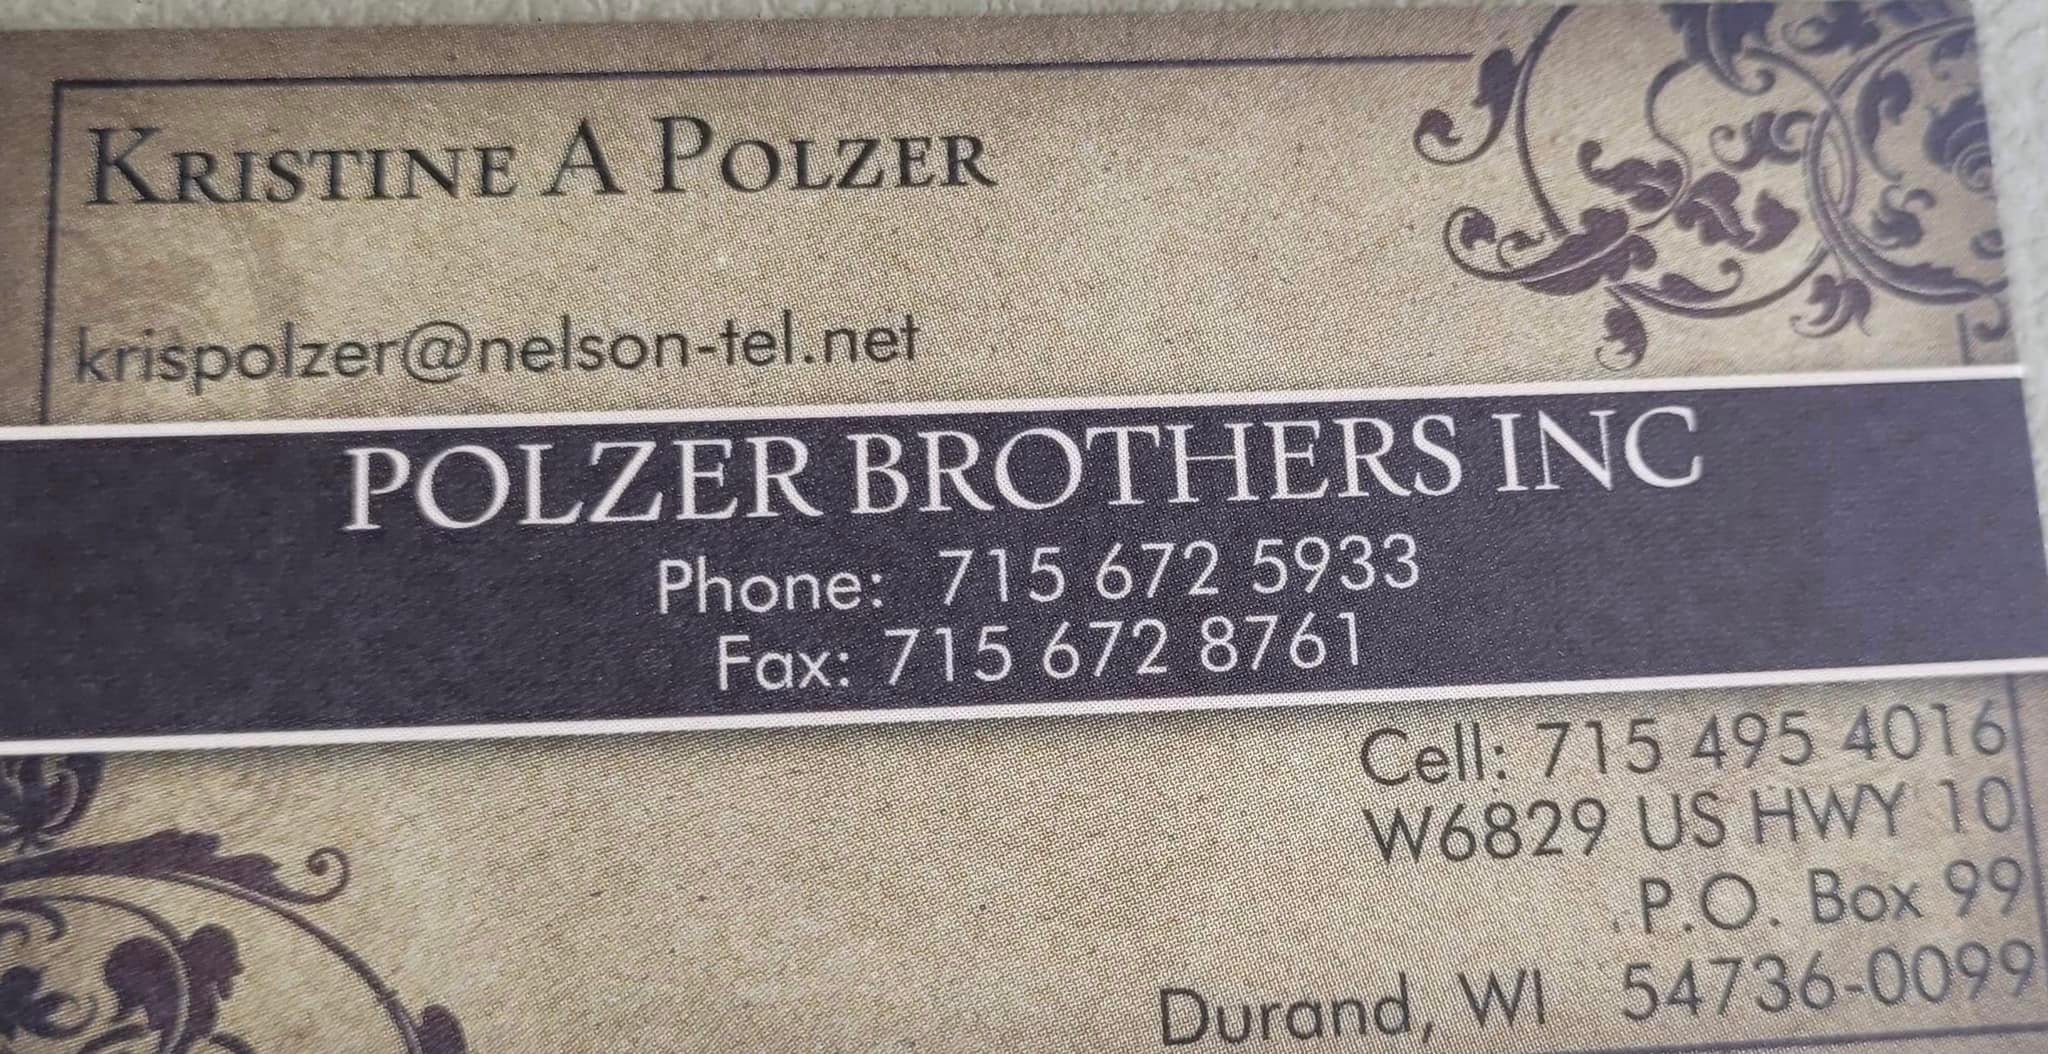 Polzer Brothers Inc.